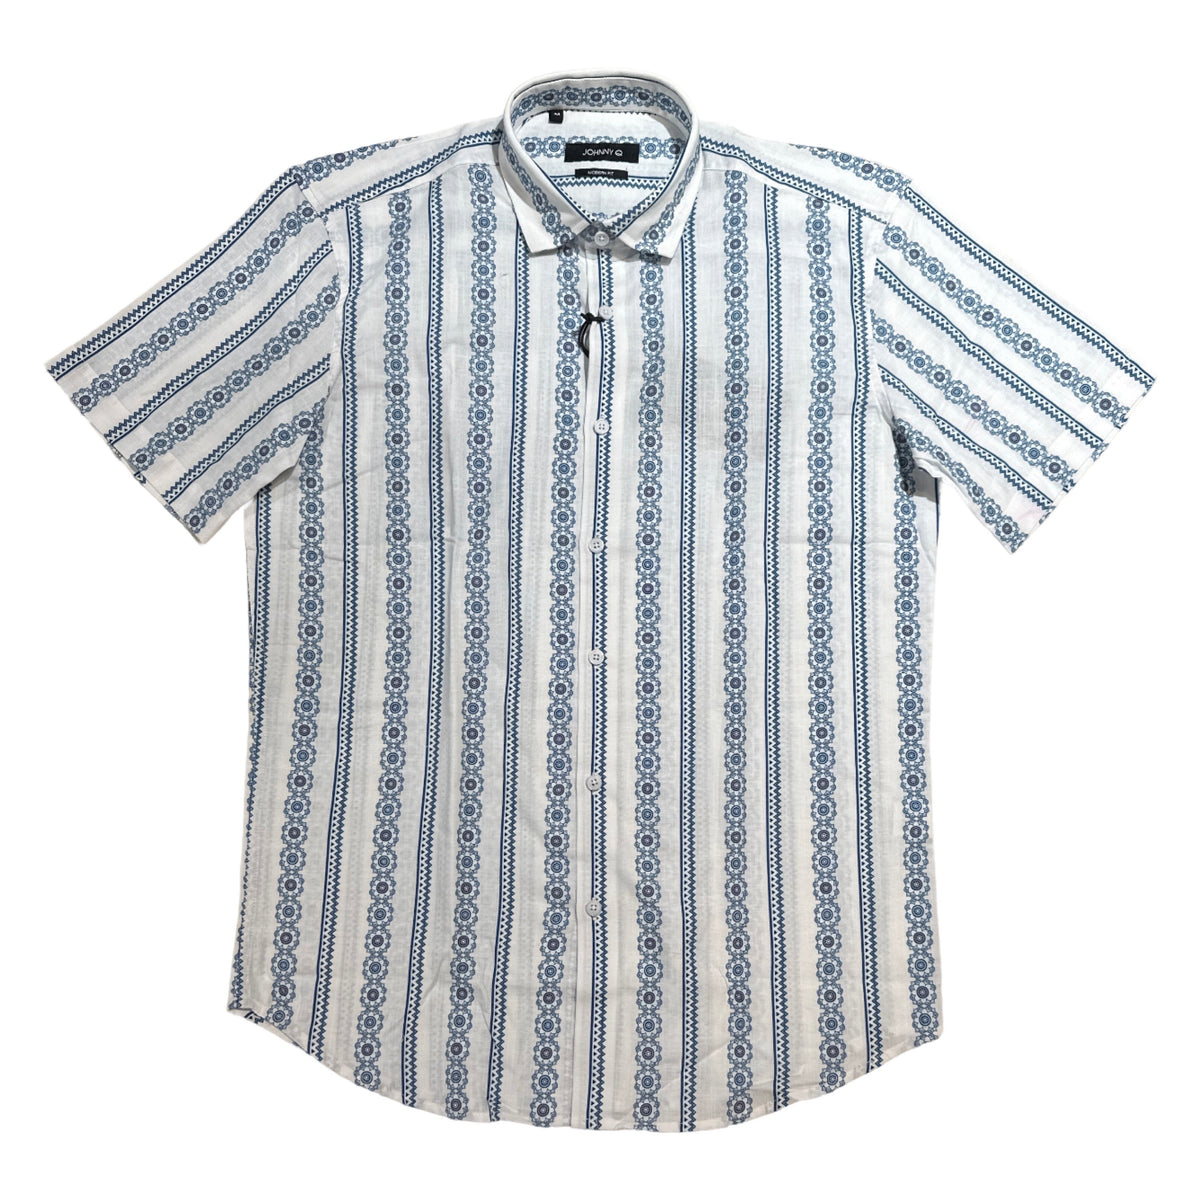 Johnny Q J 120-S White/Blue Button Up Shirt - Dudes Boutique